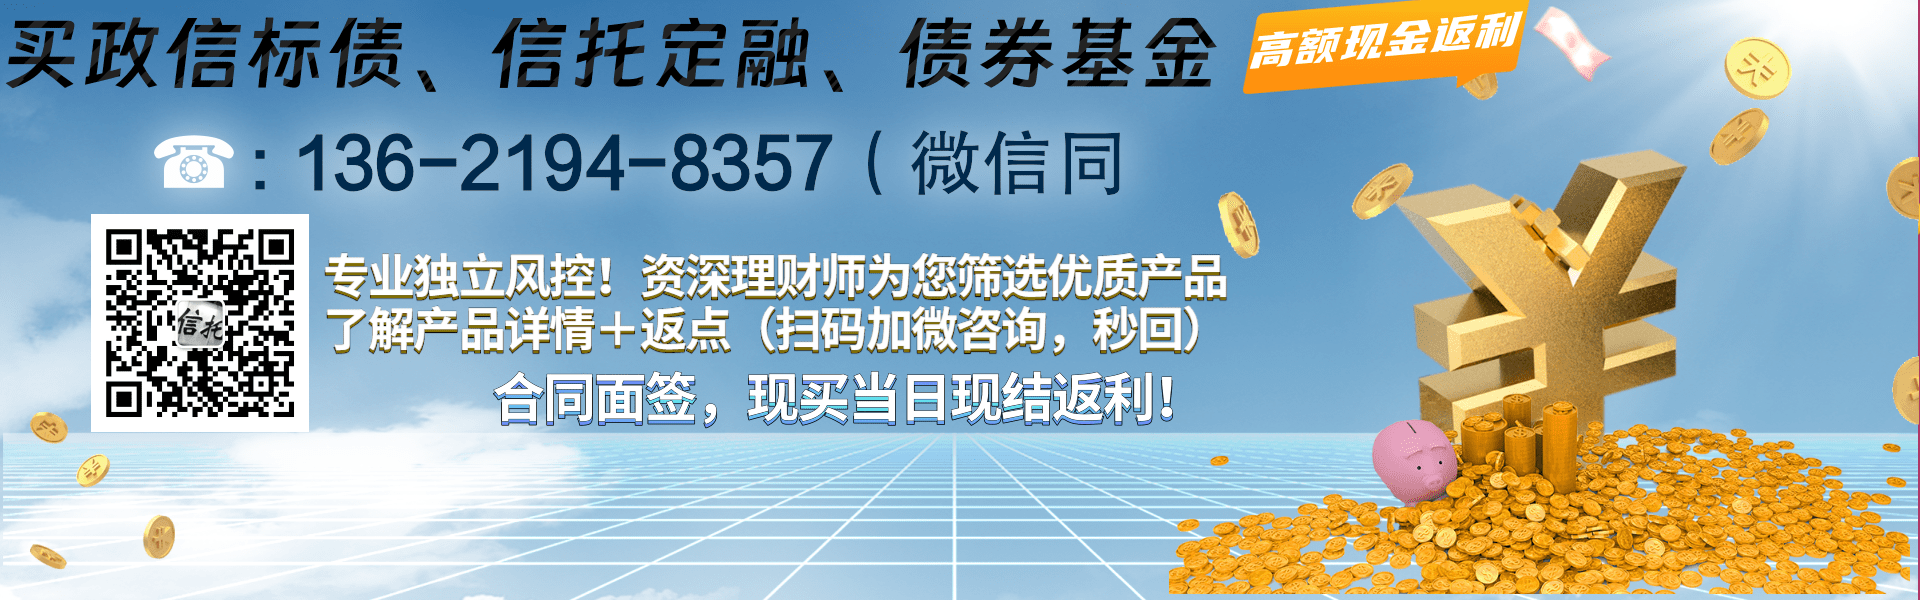 中国央企JG信托-汇融292号江苏泰州政信